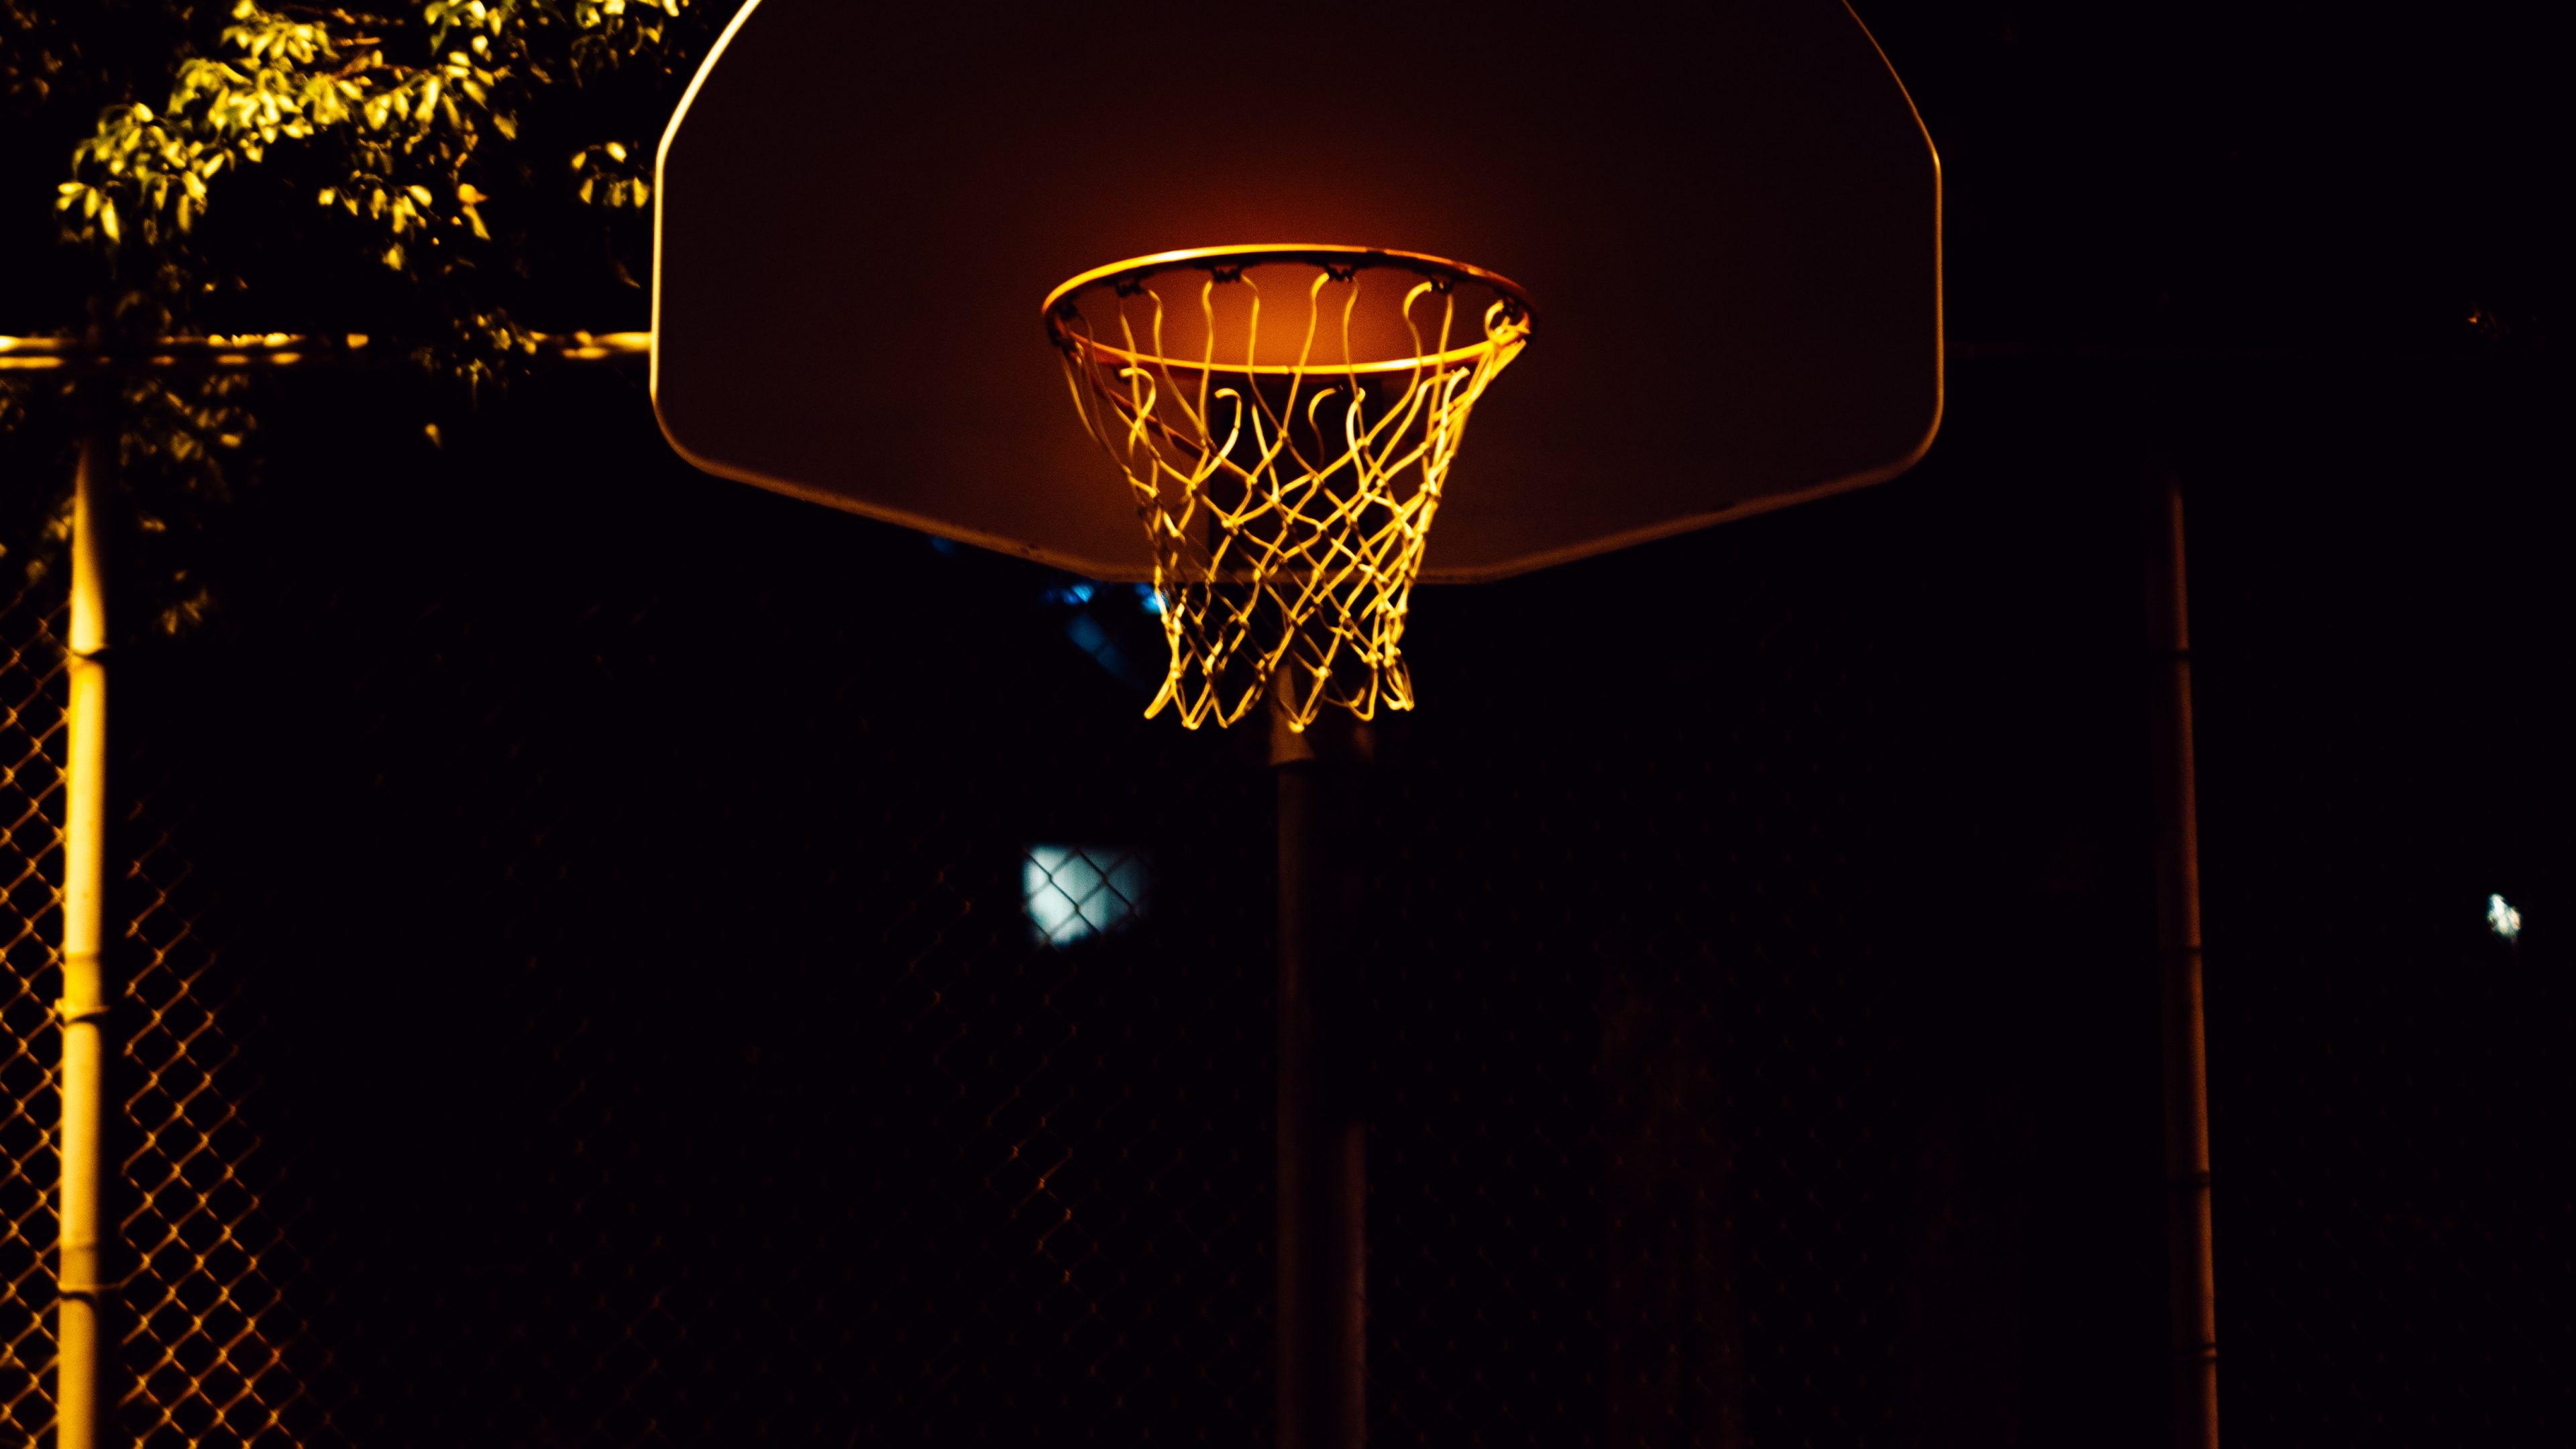 Canasta de Baloncesto Con Luz Encendida Durante la Noche.. Wallpaper in 3840x2160 Resolution